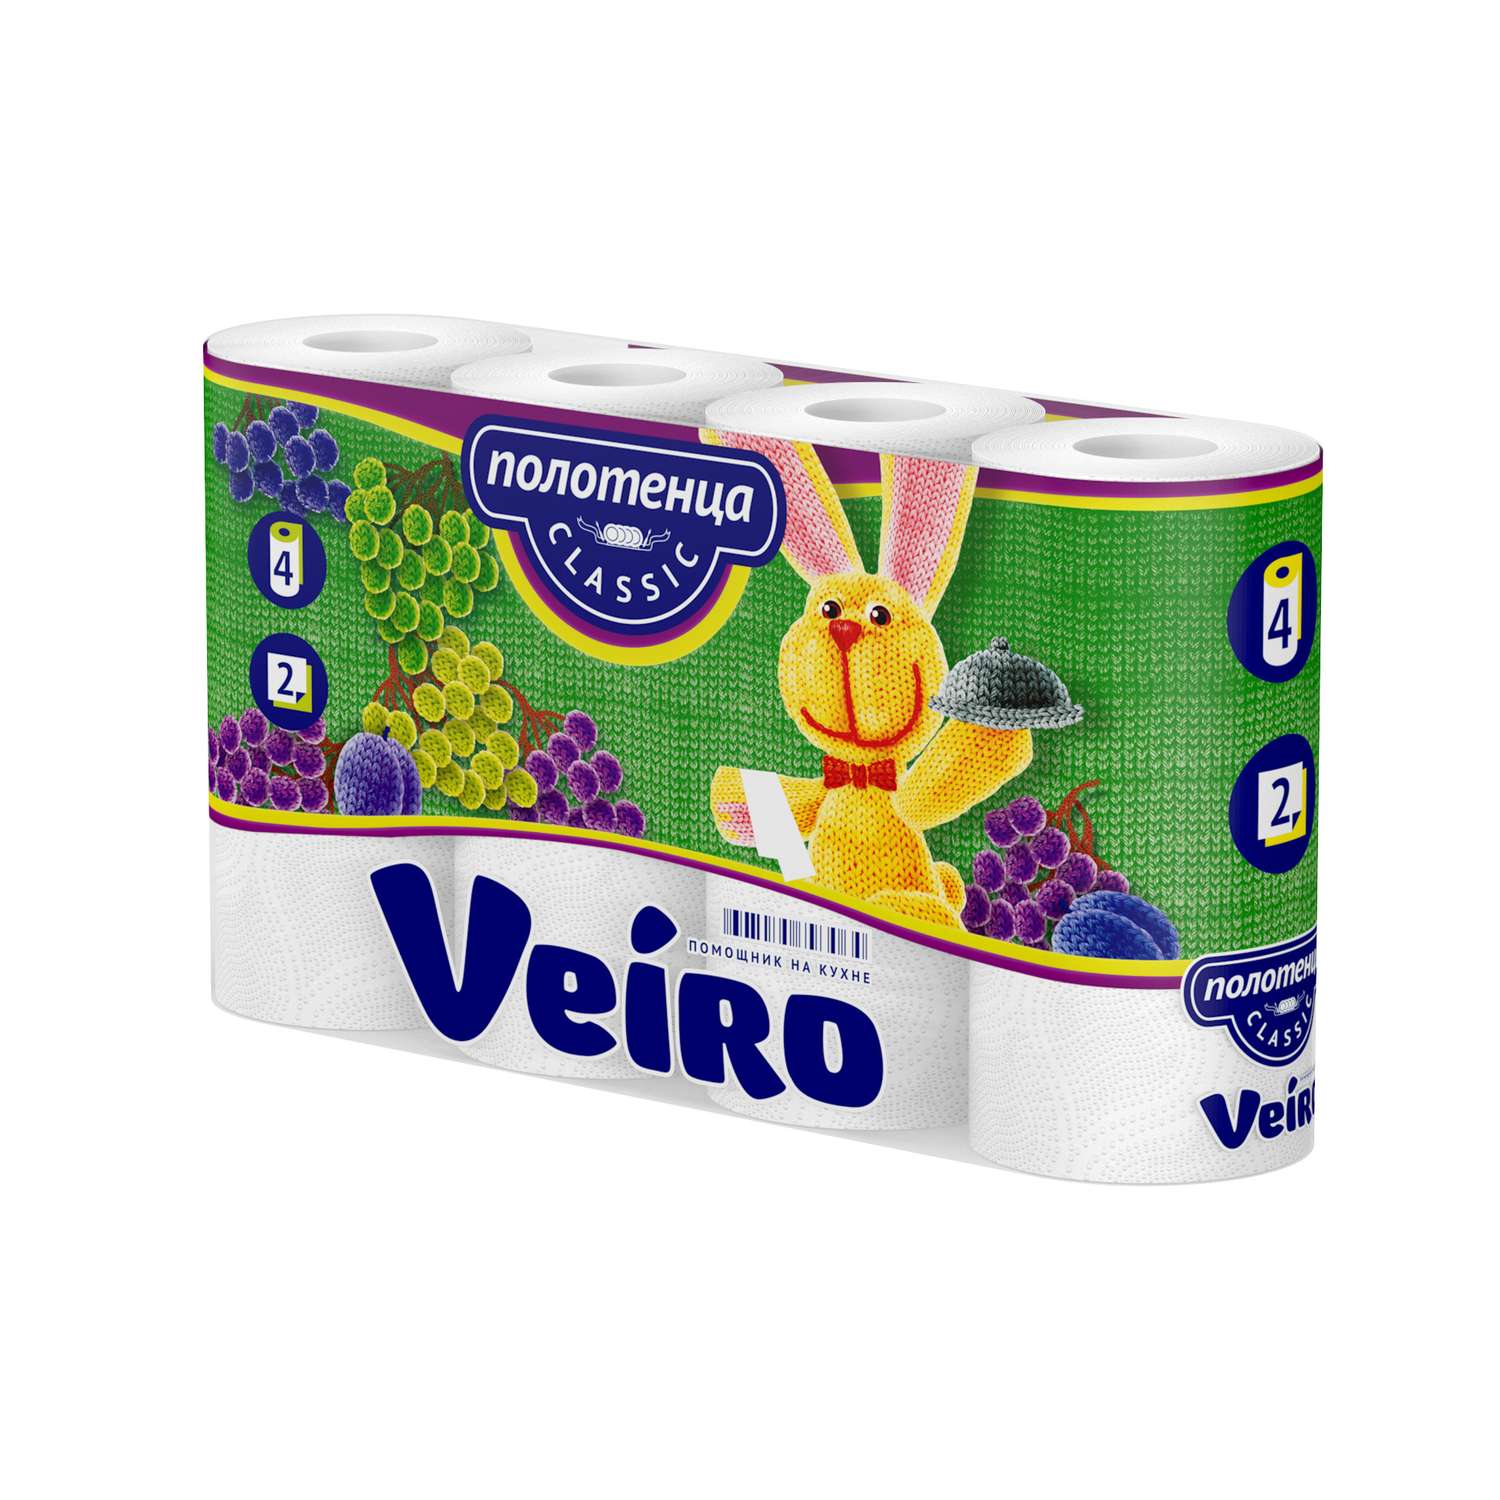 Полотенце бумажное Veiro Classic 2 слоя 4 рулона Белое/без аромата - фото 1